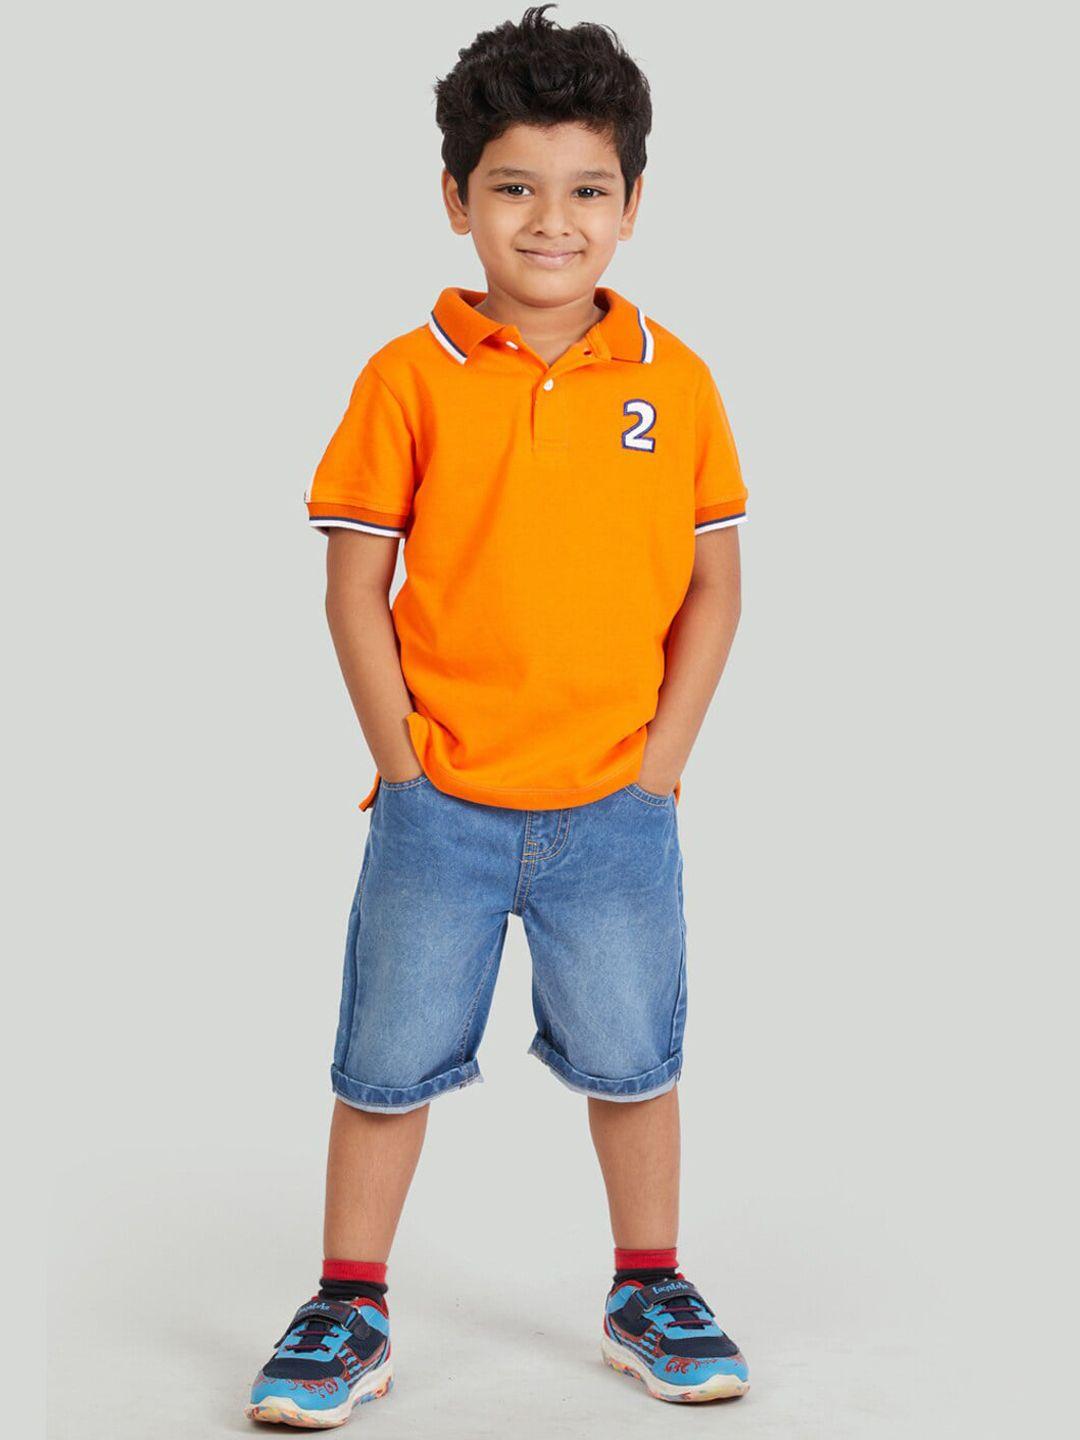 zalio boys orange & blue t-shirt with shorts